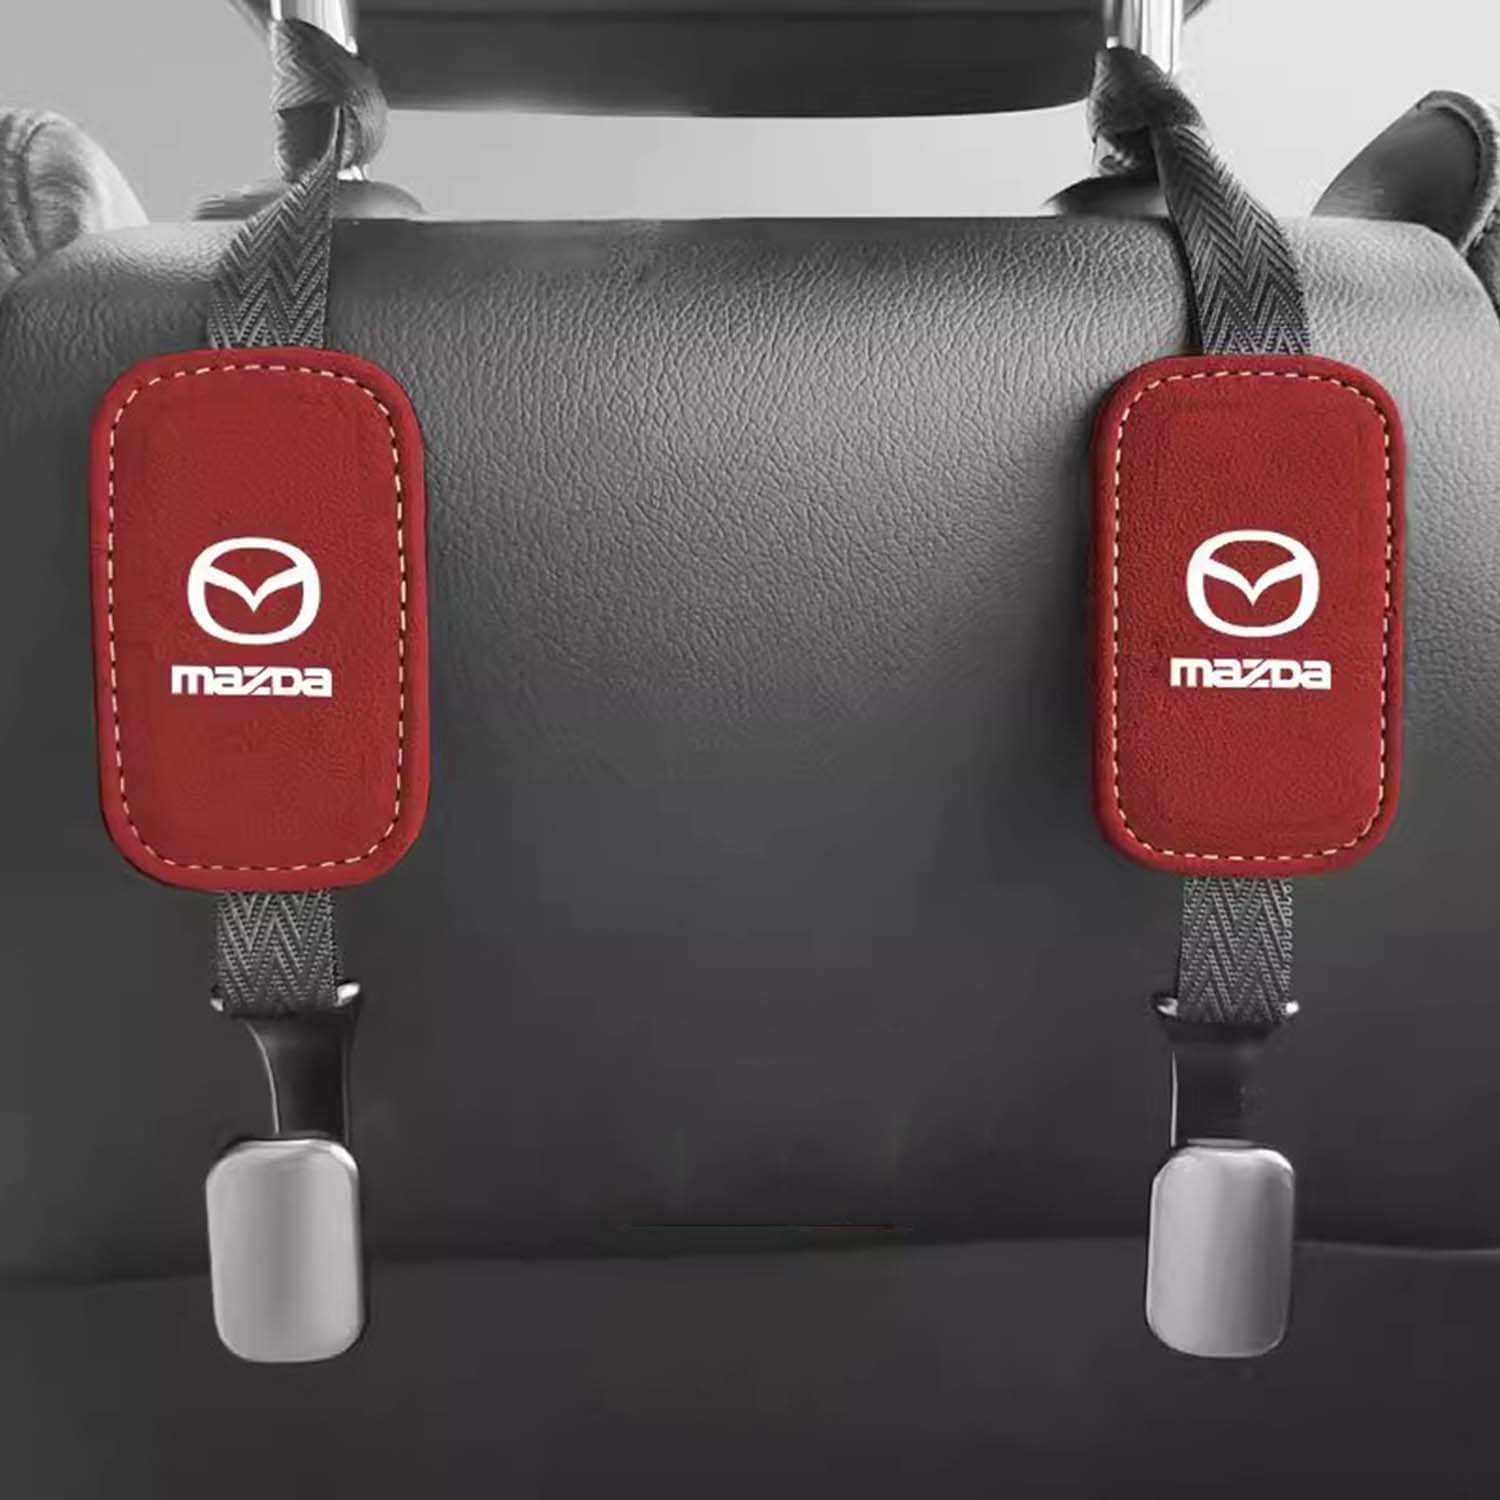 SXSTYSXCLGS 4 Stück Autositz-Kopfstützen-Haken für Mazda 6 Ruiyi CX-4 Artz Onxela CX-5,Auto-Kopfstützen-Haken, Autositz-Haken zum Aufhängen von Kleidung, Geldbörsen, Regenschirmen, Red von SXSTYSXCLGS